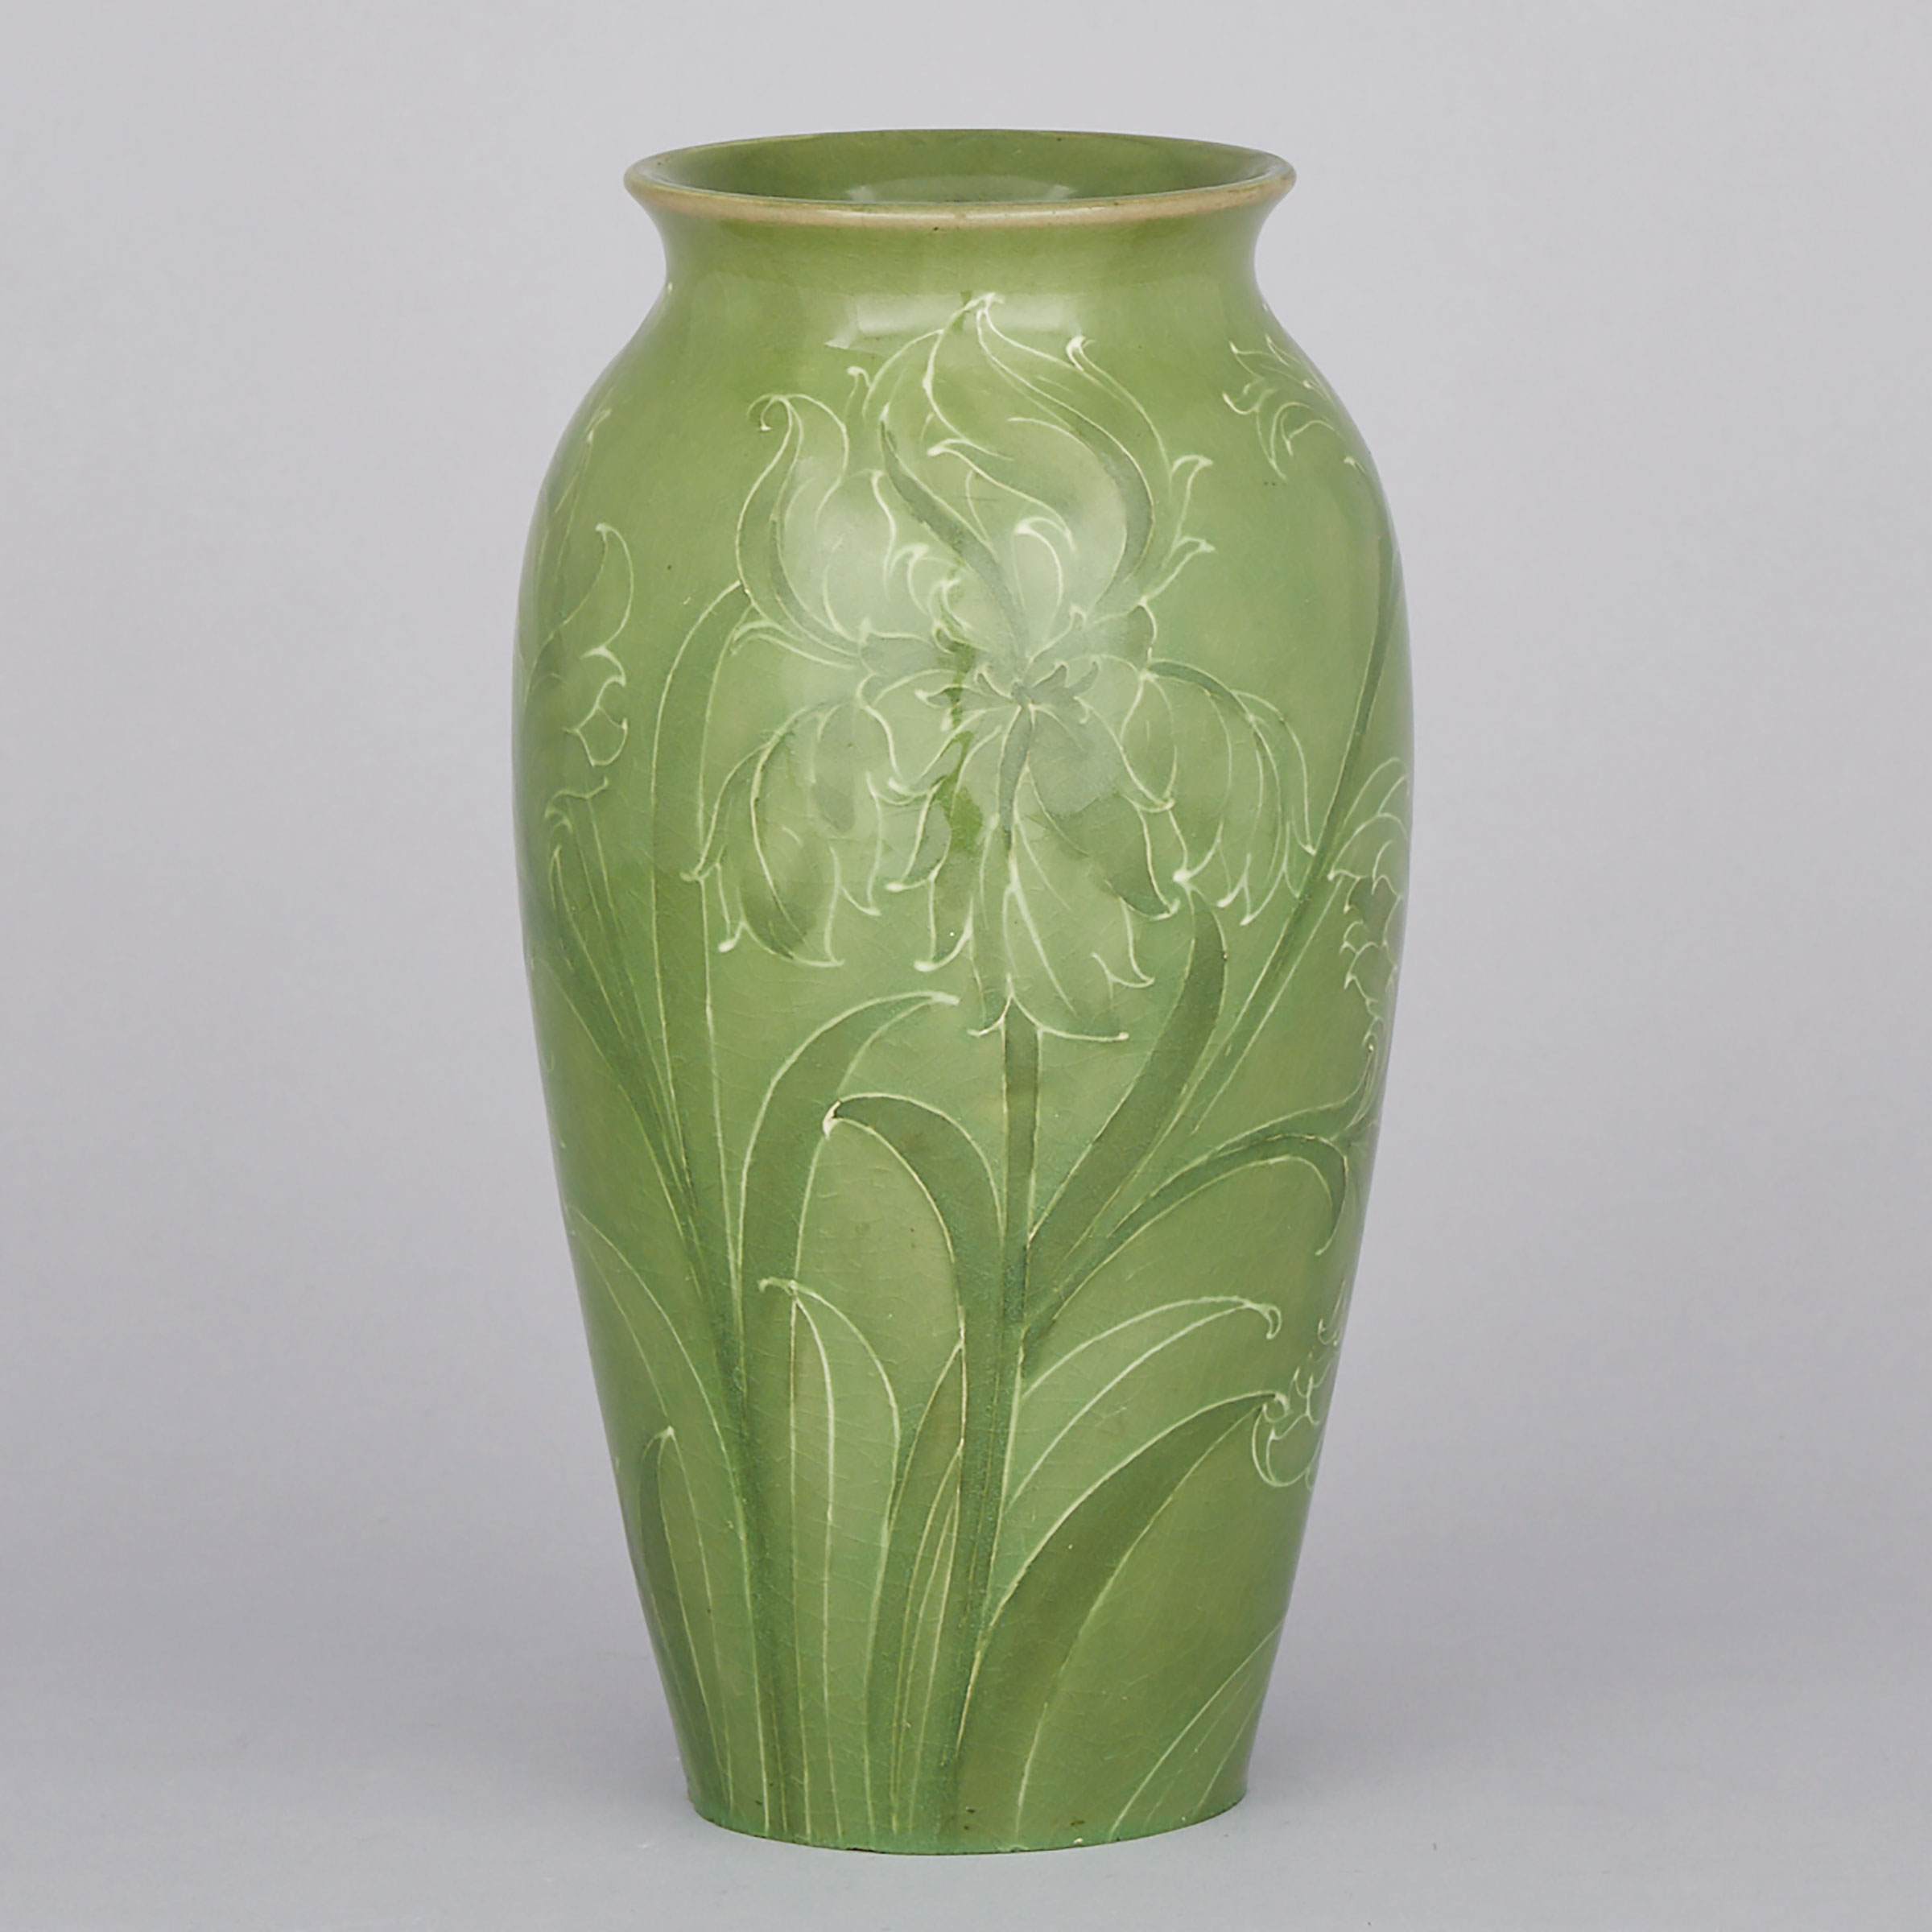 Moorcroft Green Floral Vase, c.1914-16